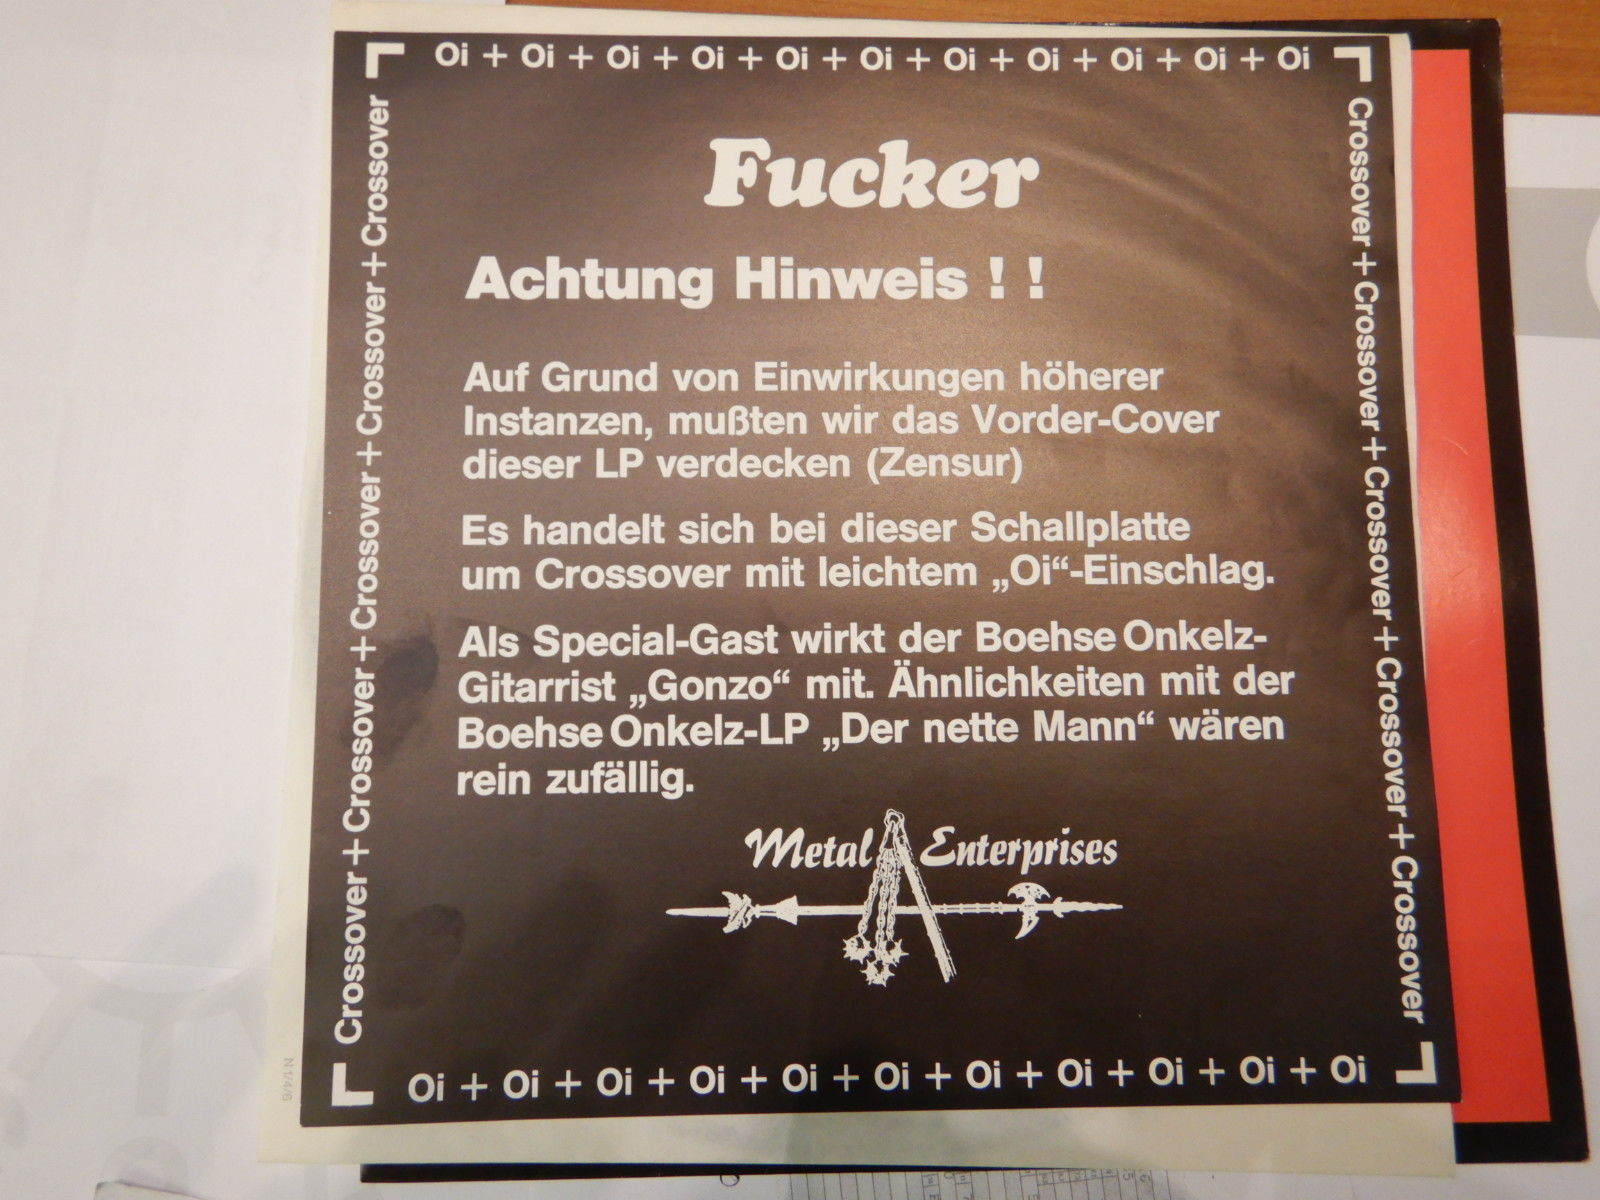 Böhse Onkelz - Gonzo - Fucker - Innerbag - Vinyl - Commemorative Plaque - HD Wallpaper 